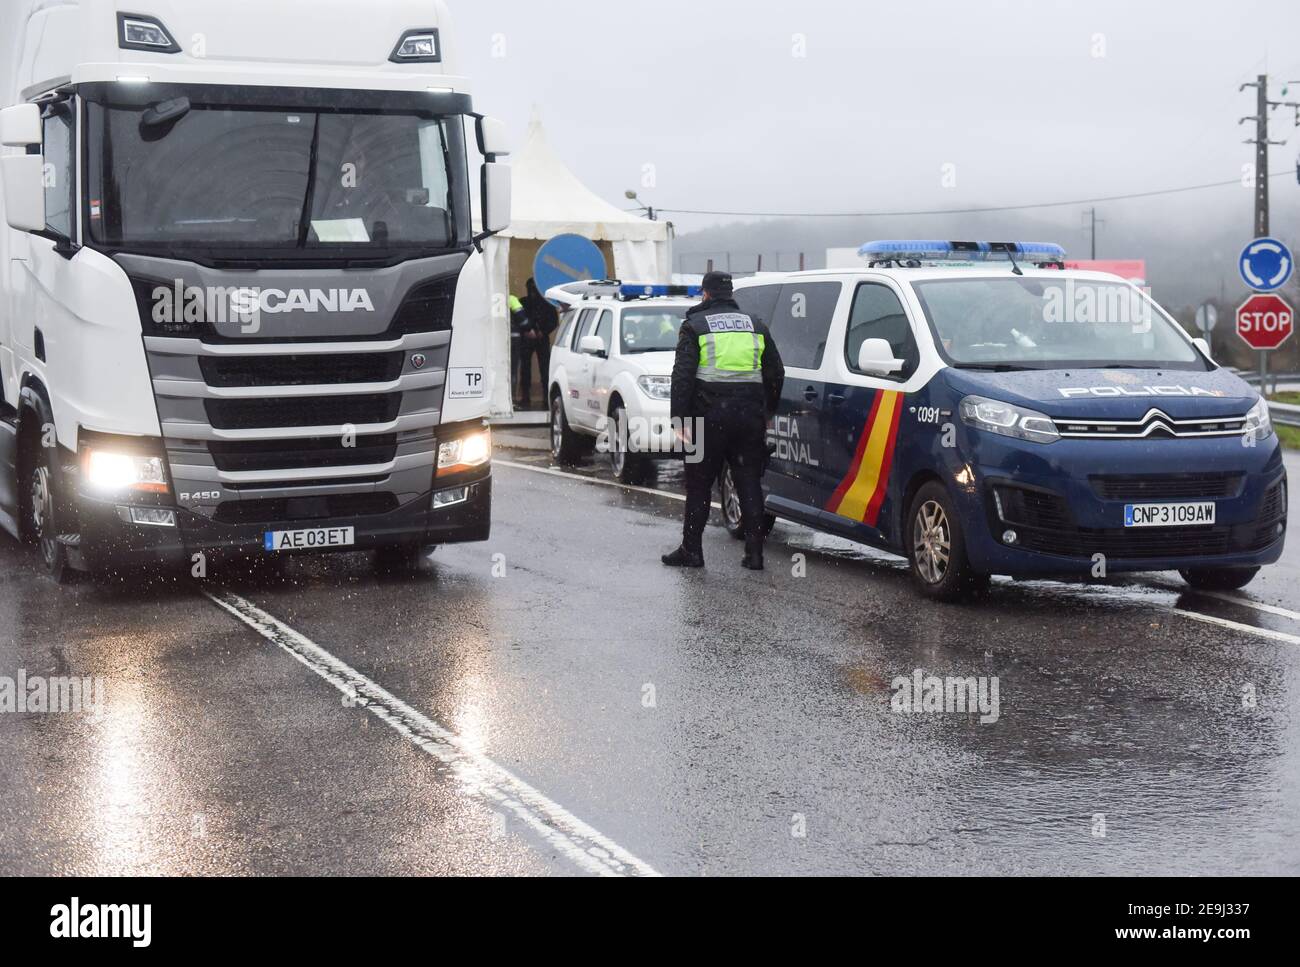 El policía de fronteras inspecciona un vehículo en un puesto de control en  medio de una crisis de coronavirus.desde enero de 31, Portugal cerró su  frontera terrestre con España, por un período